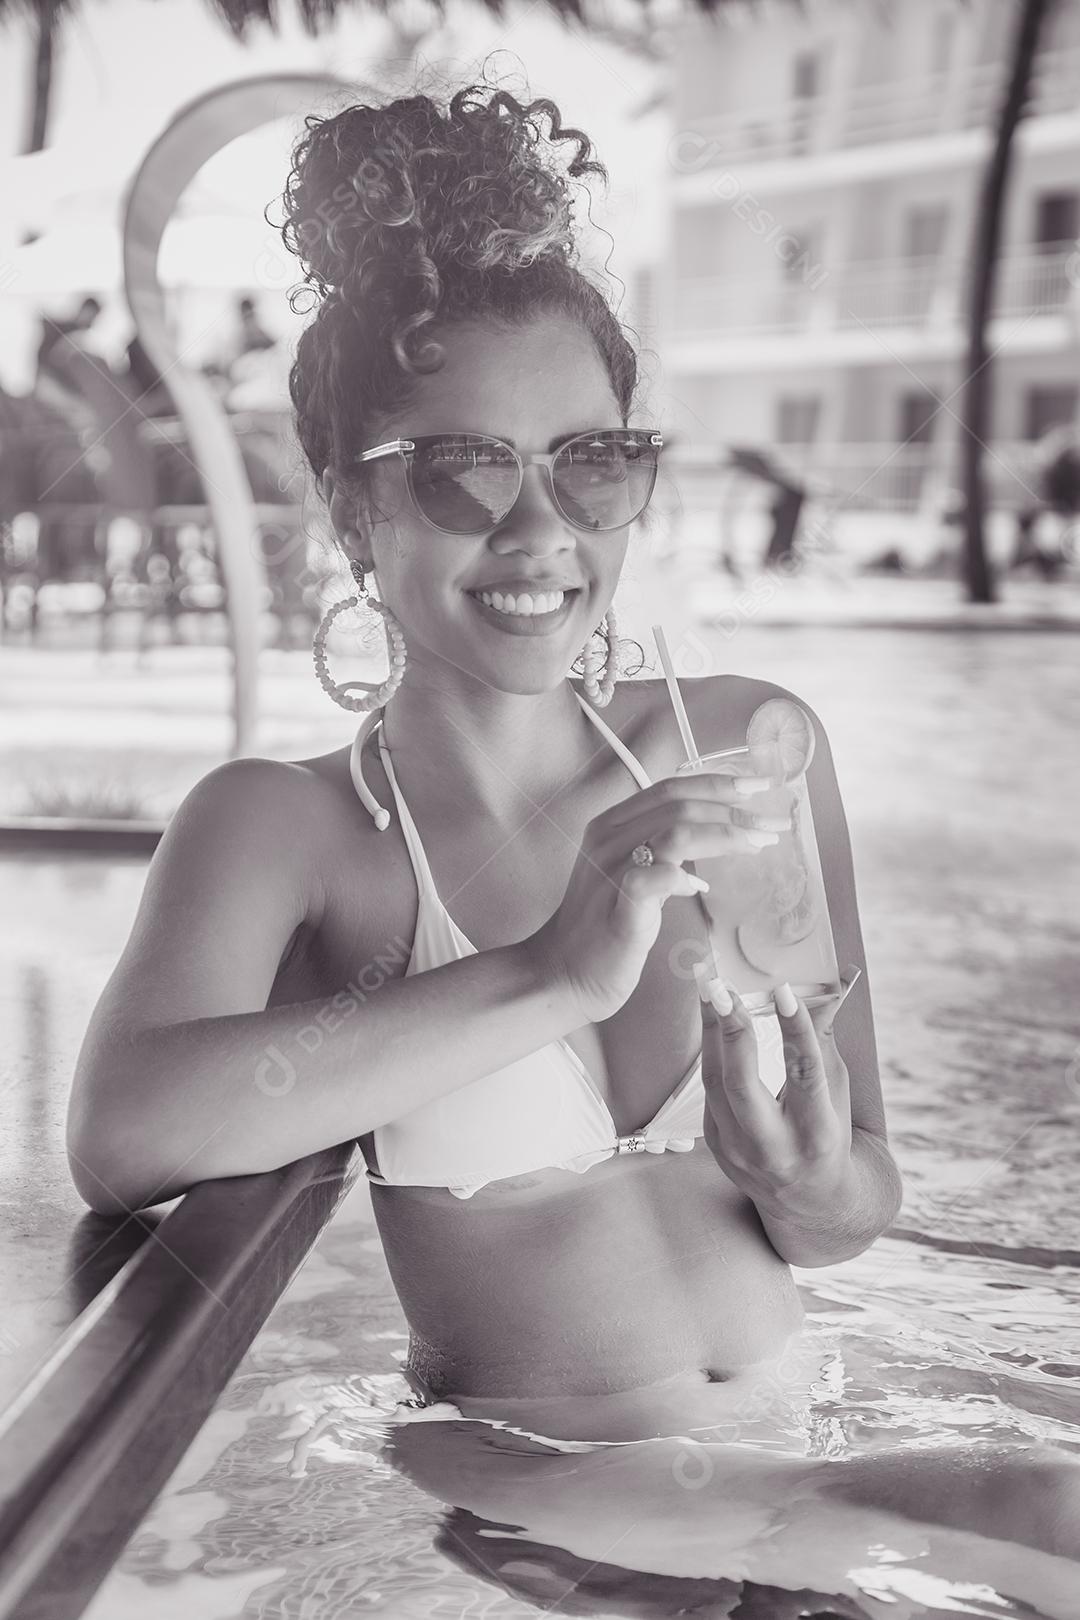 Jovem de férias na piscina do hotel tomando uma deliciosa bebida alcoólica.